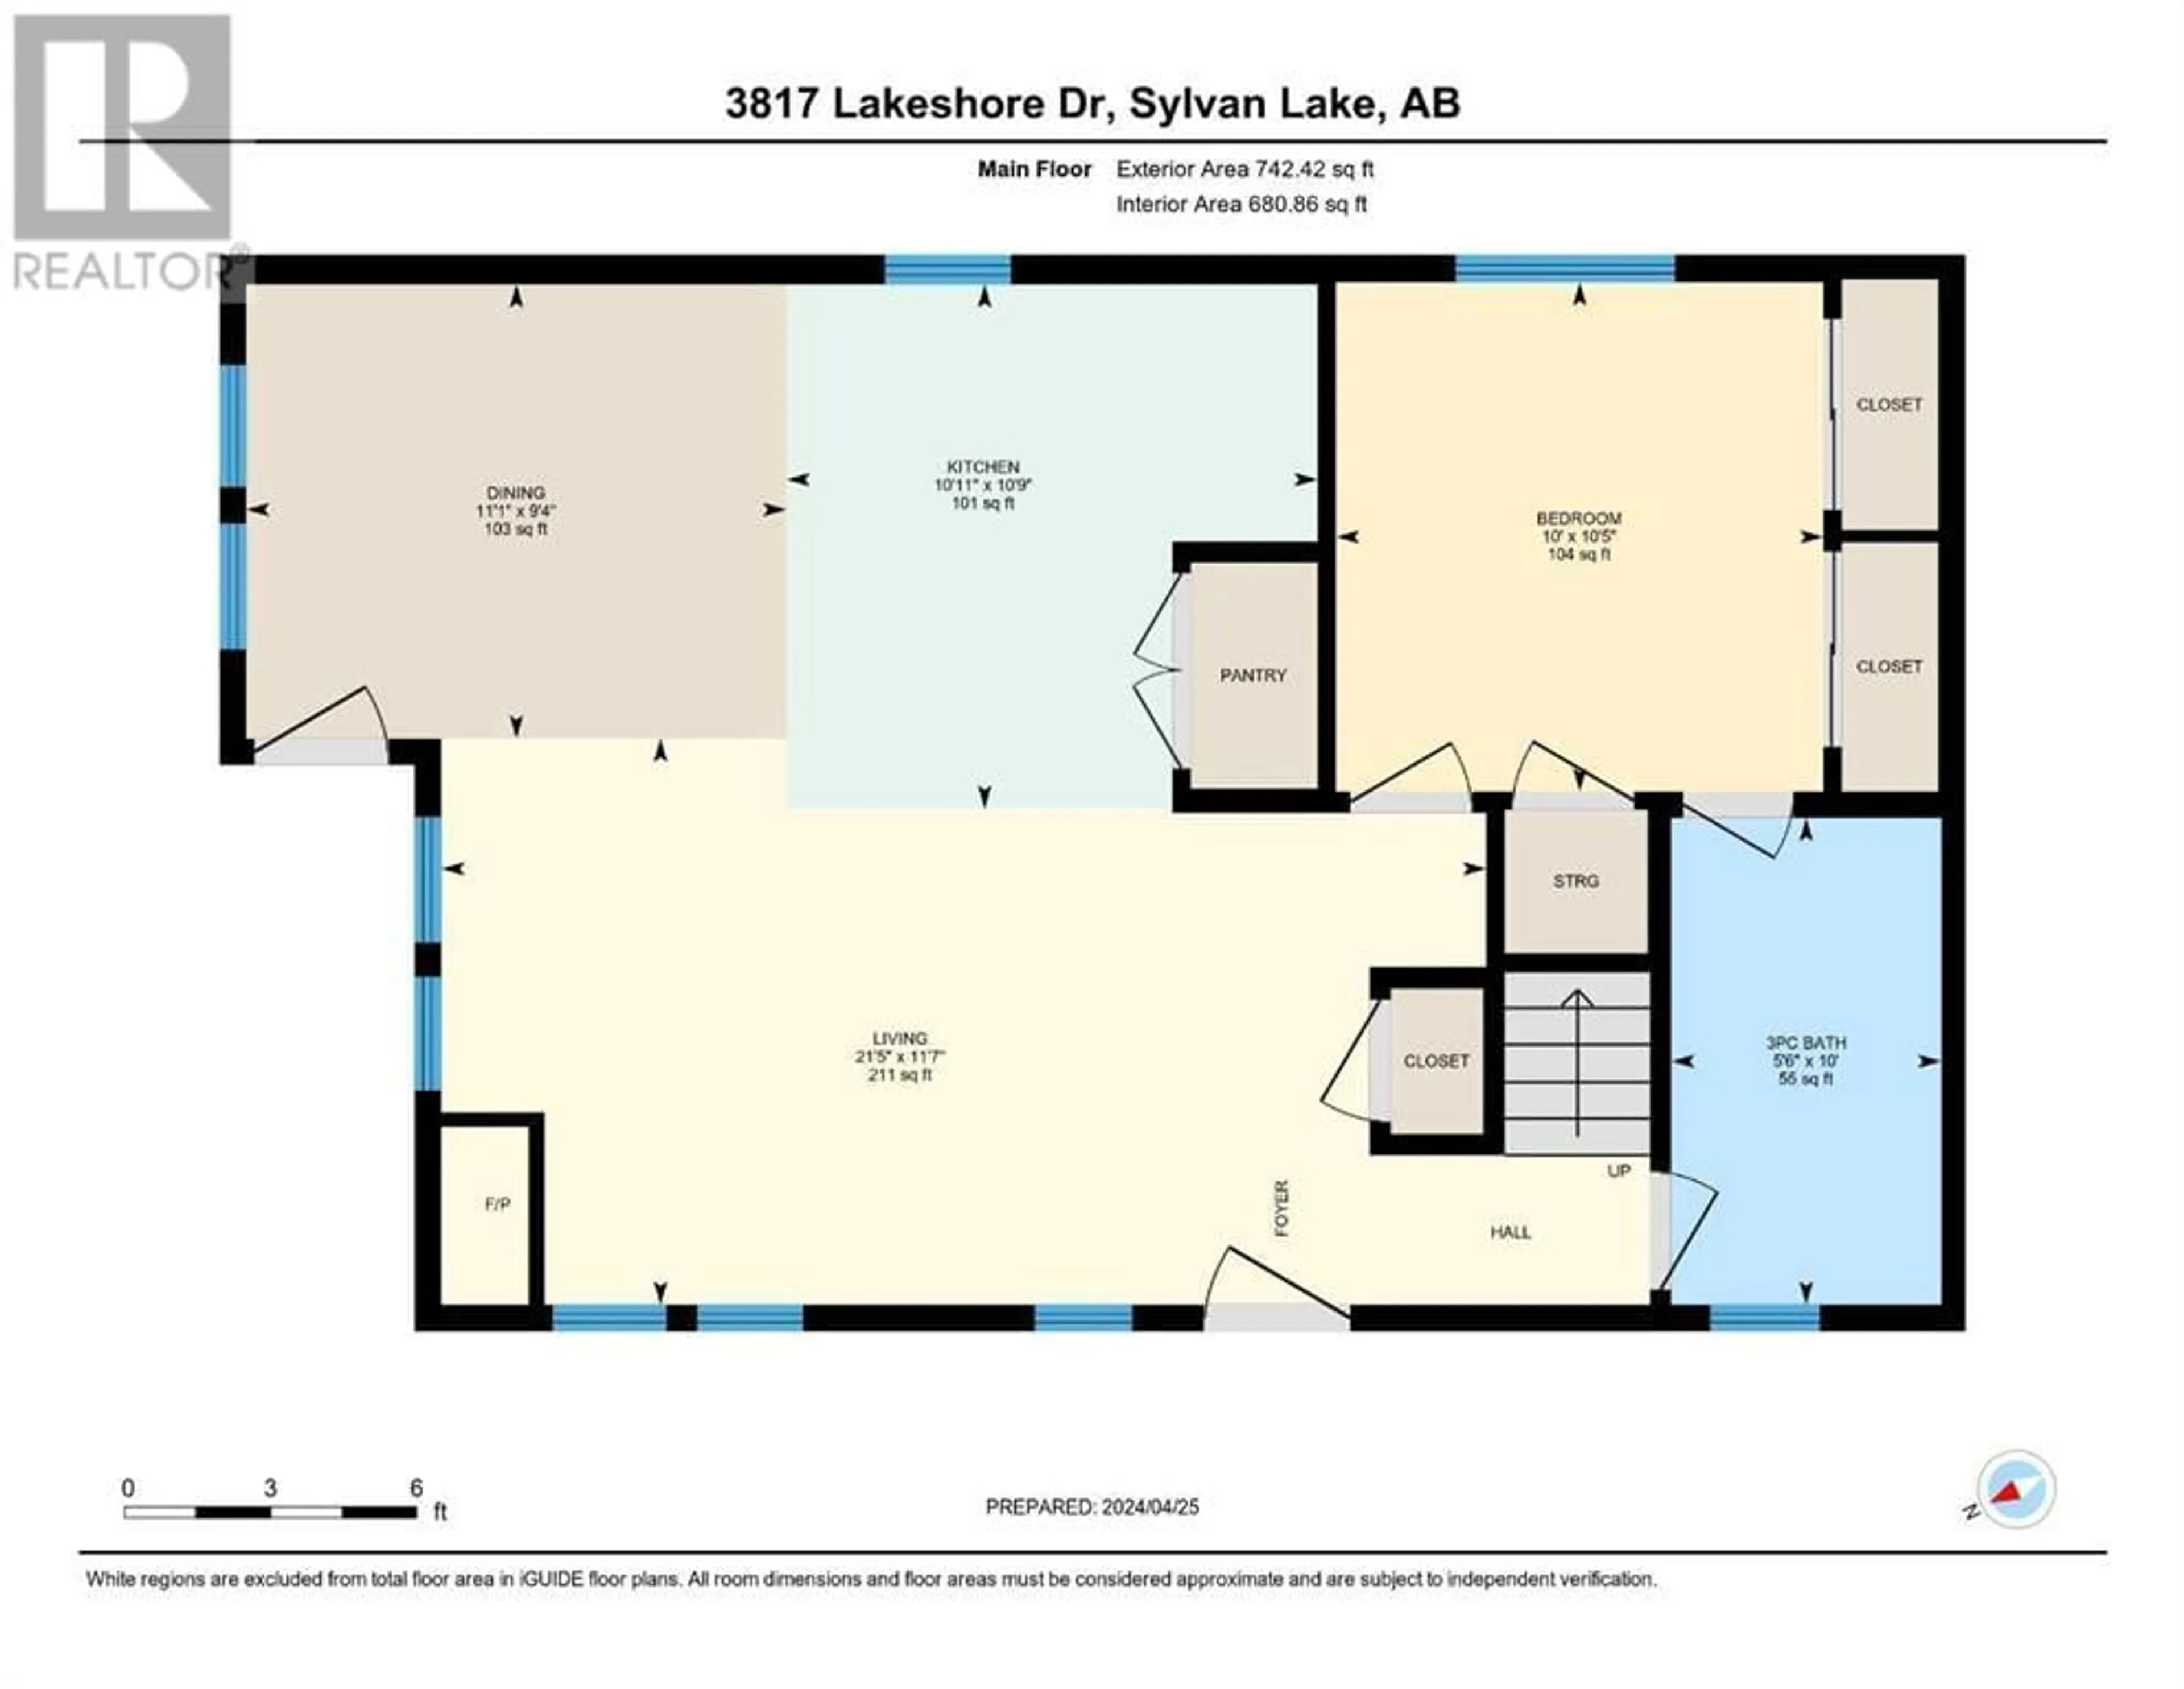 Floor plan for 3817 Lakeshore Drive, Sylvan Lake Alberta T4S1B8